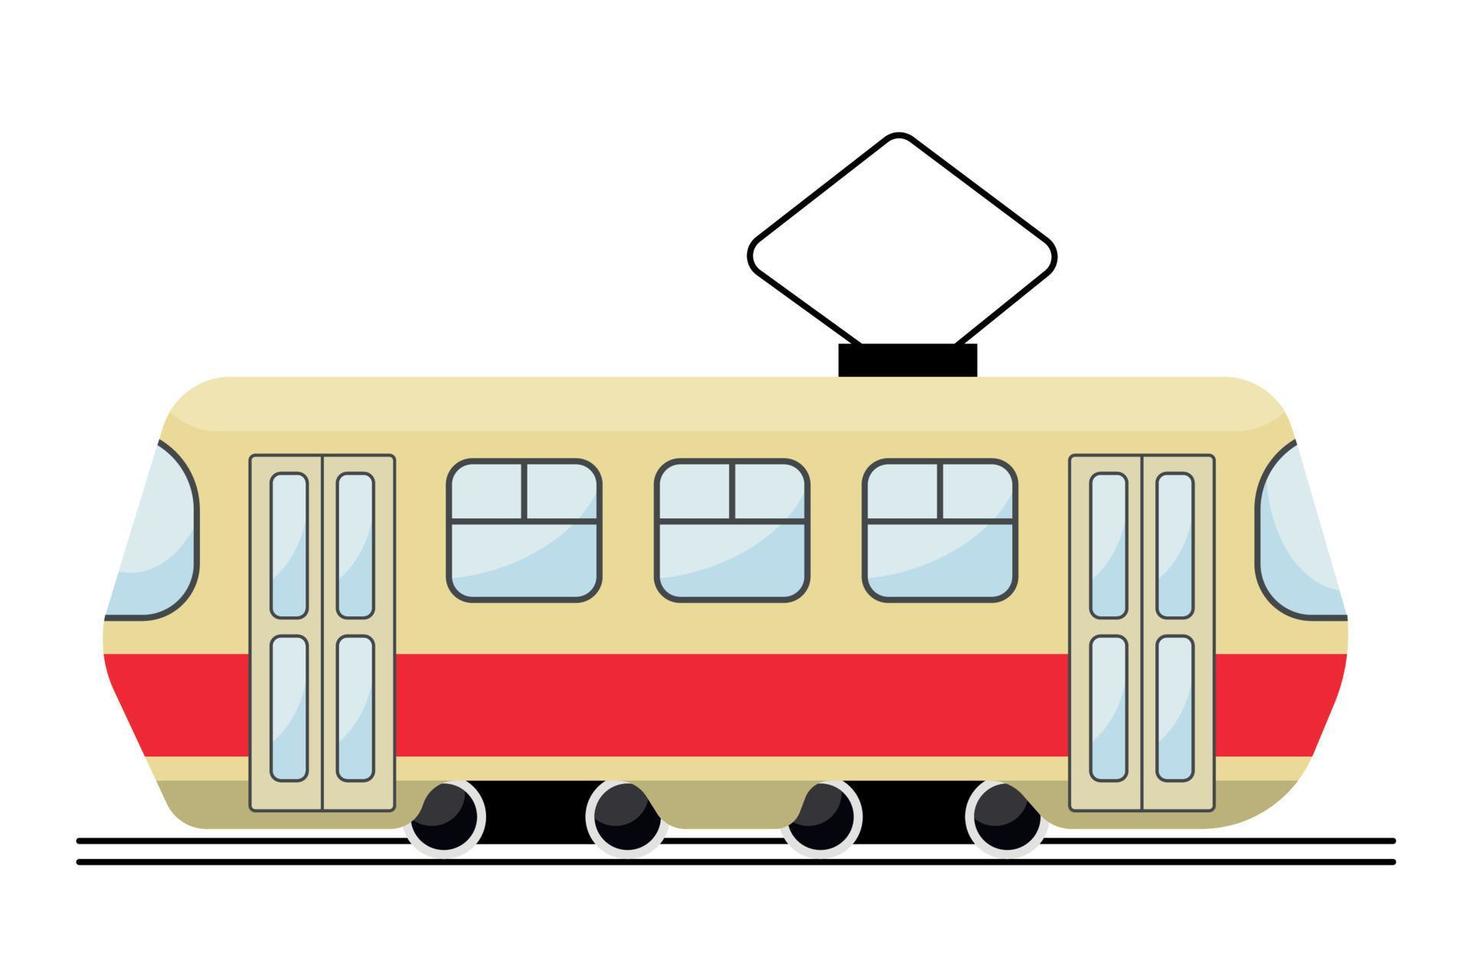 lindo tranvía retro amarillo-rojo urbano, vector plano, aislado en blanco